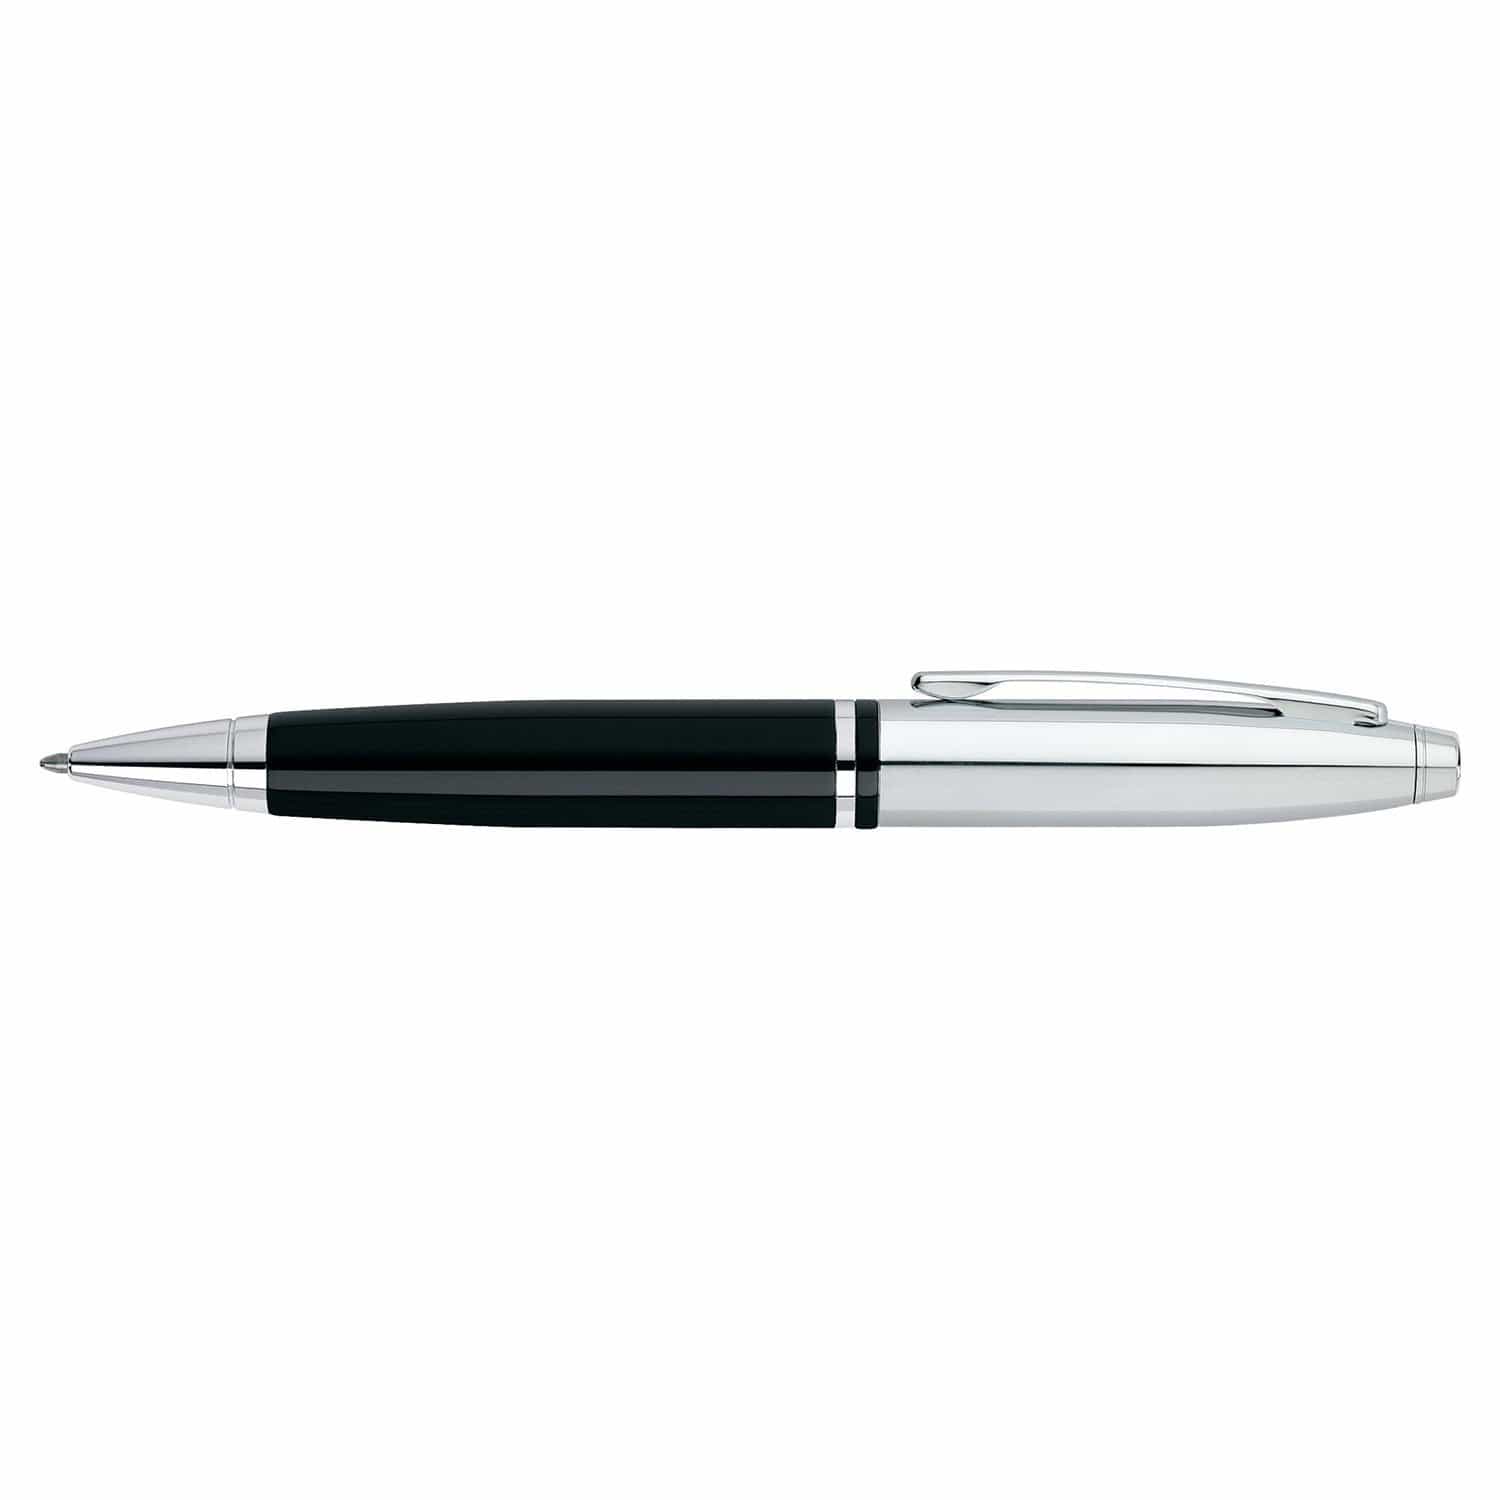 قلم حبر جاف مطلي بالكروم والورنيش الأسود من كروس كاليه - AT0112-2 - Jashanmal Home